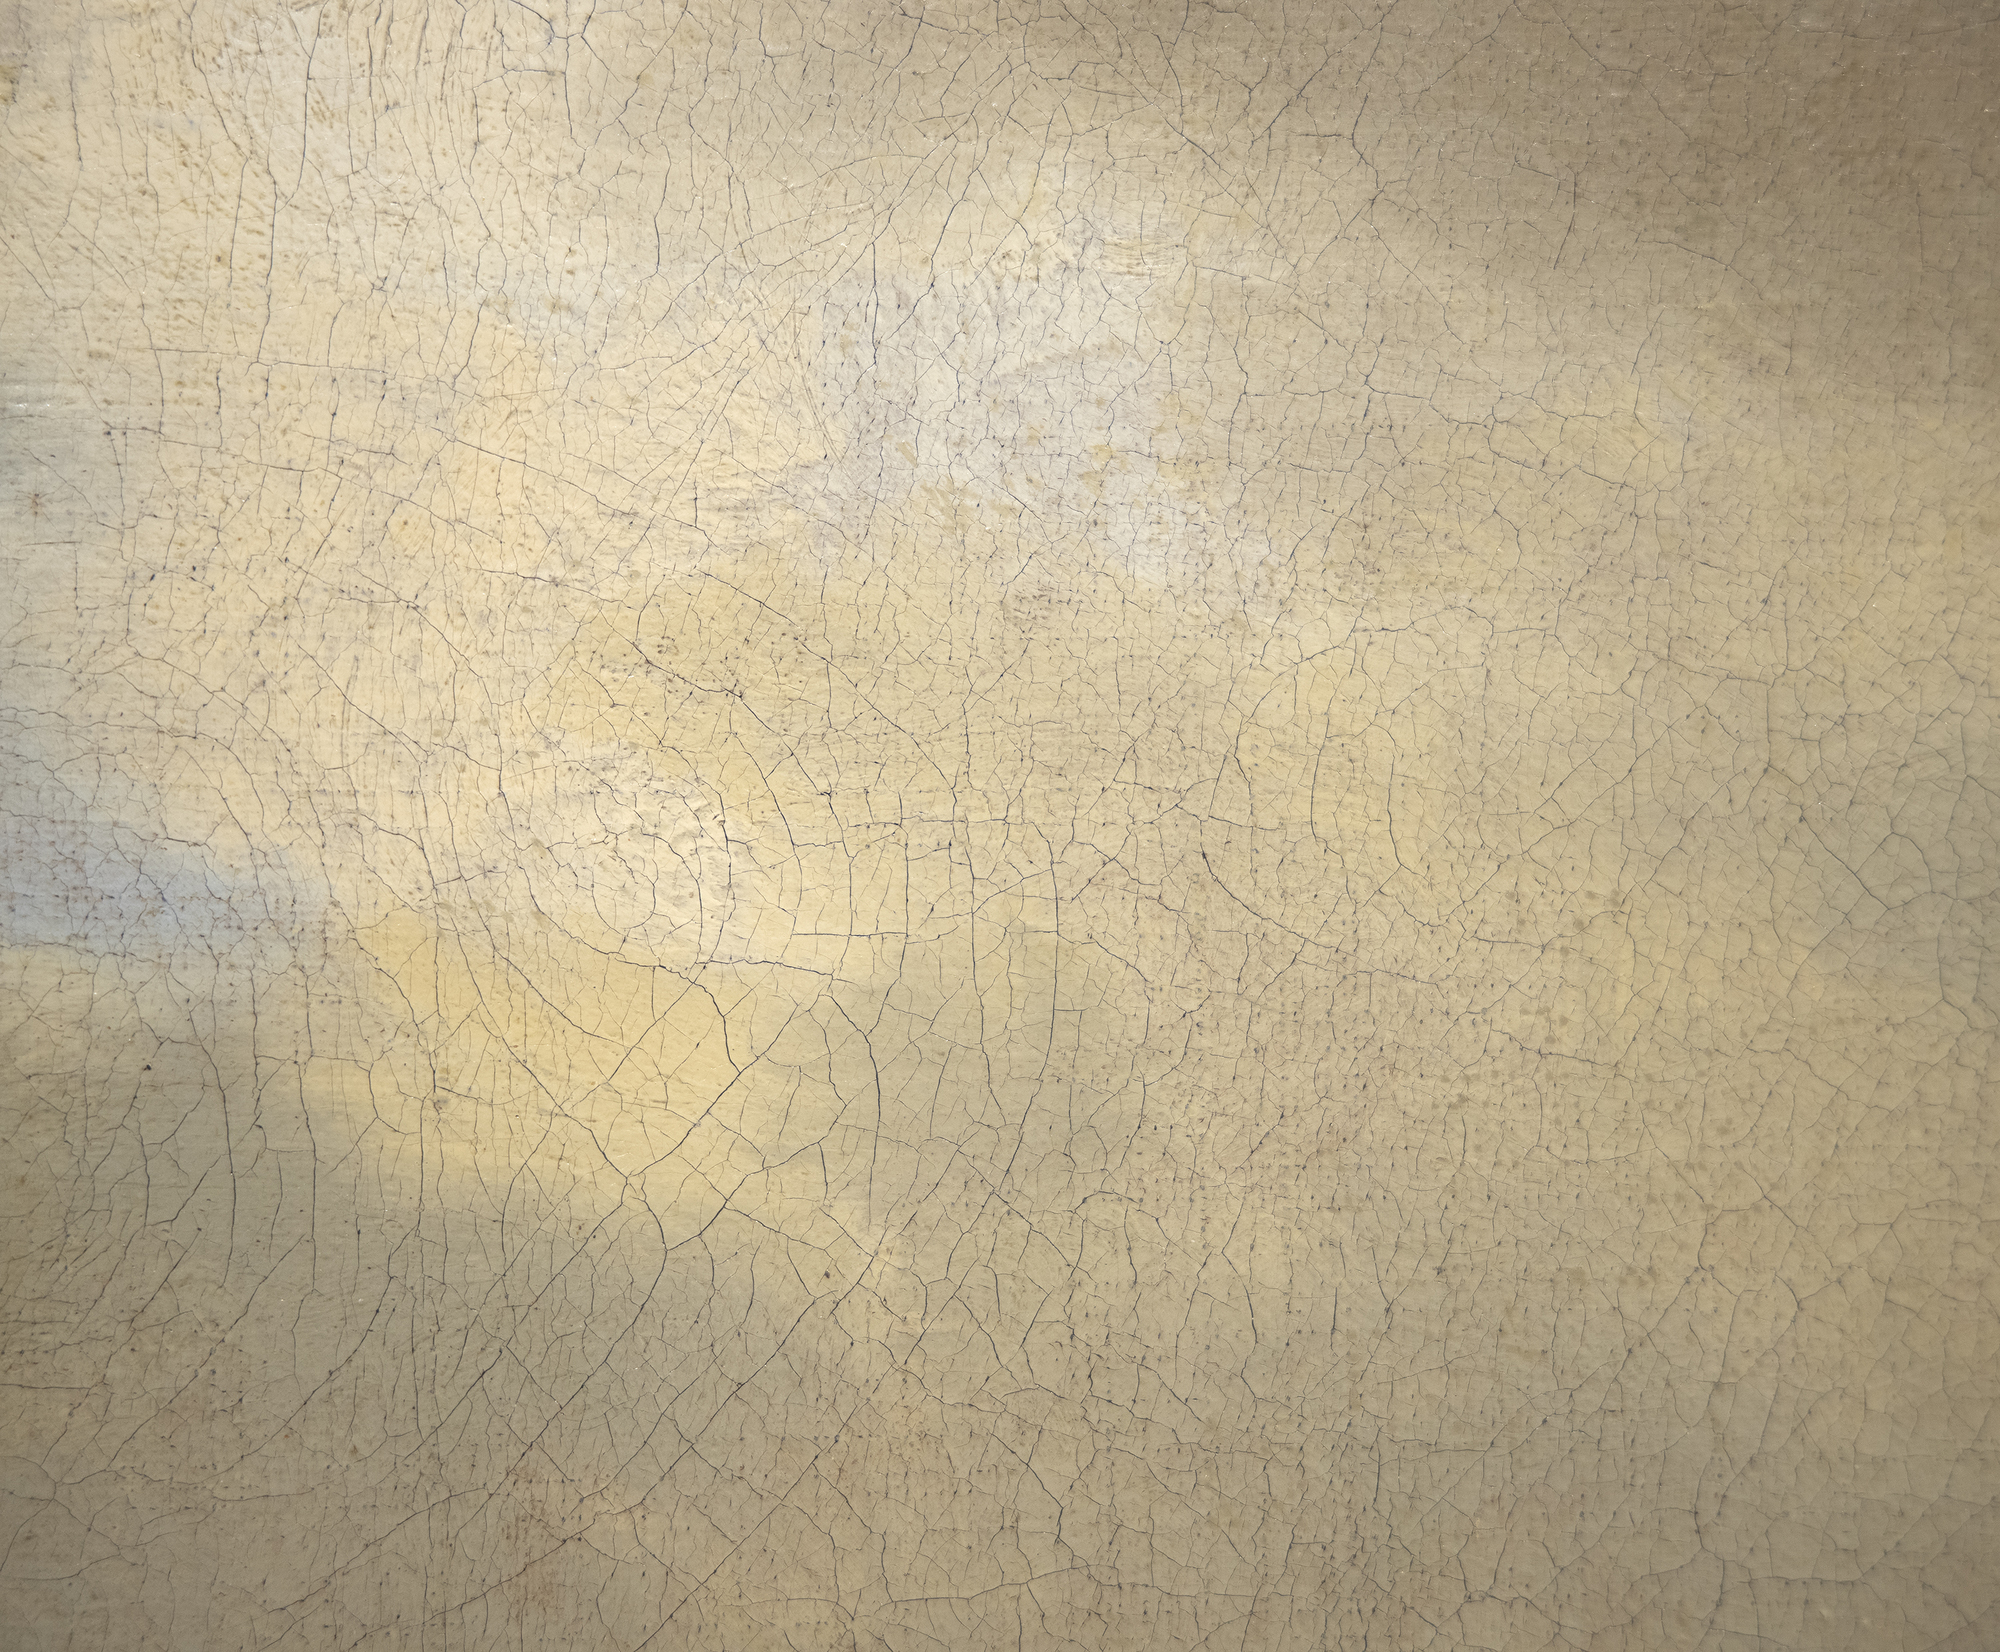 سالومون فان RUYSDAEL - المناظر الطبيعية الكثبان الرملية مع شخصيات يستريح وزوجين على ظهور الخيل، وجهة نظر من كاتدرائية نيميغن وراء - النفط على قماش - 26 1/2 × 41 1/2 في.